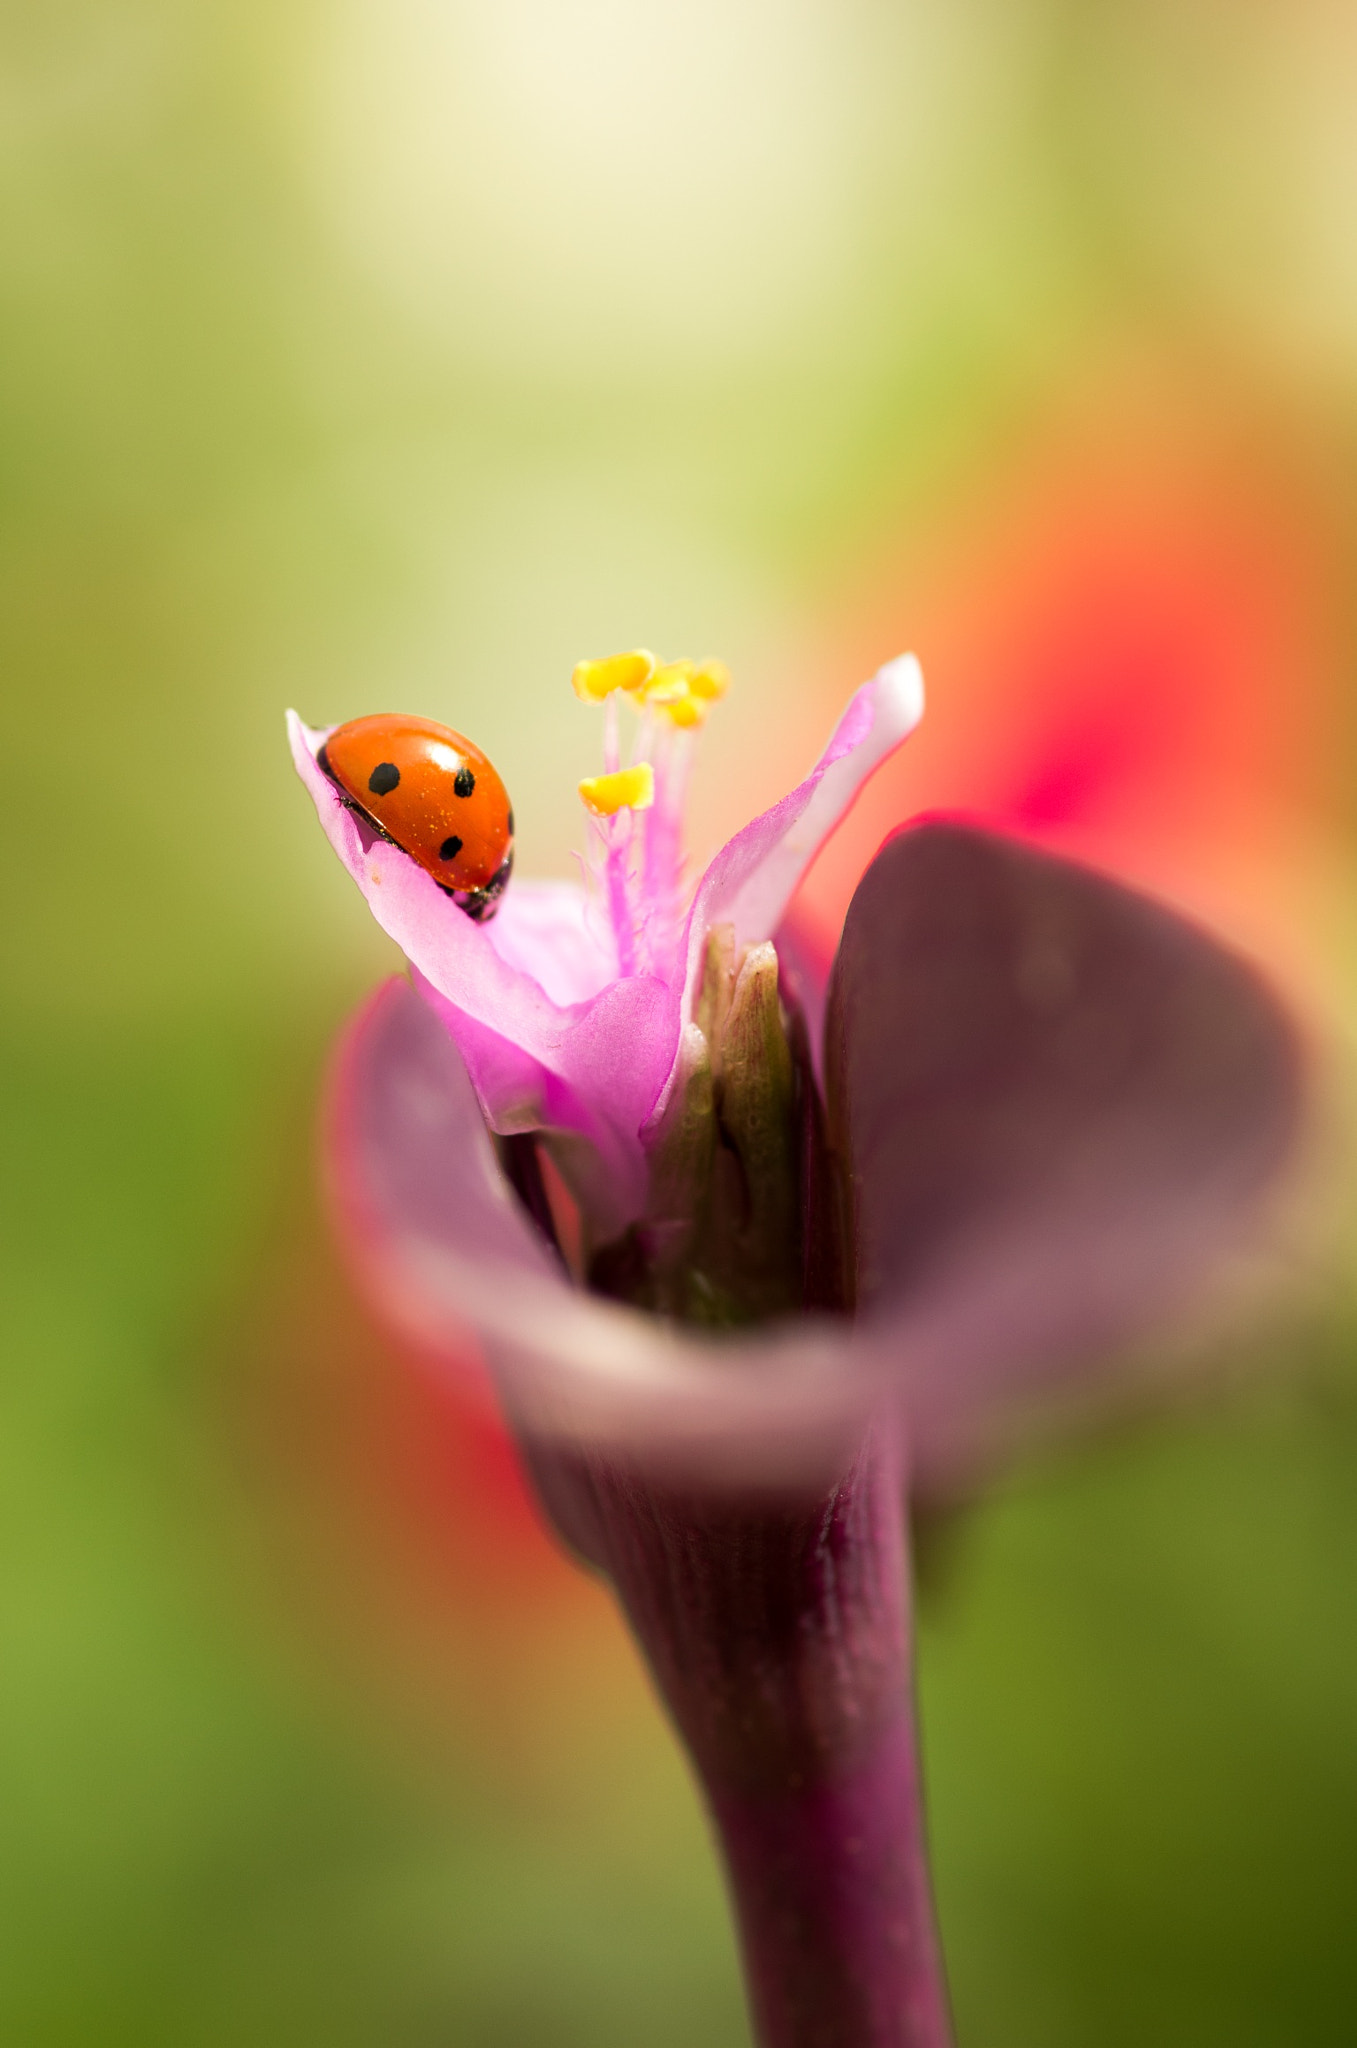 Pentax K-5 IIs sample photo. Sleeping ladybug photography